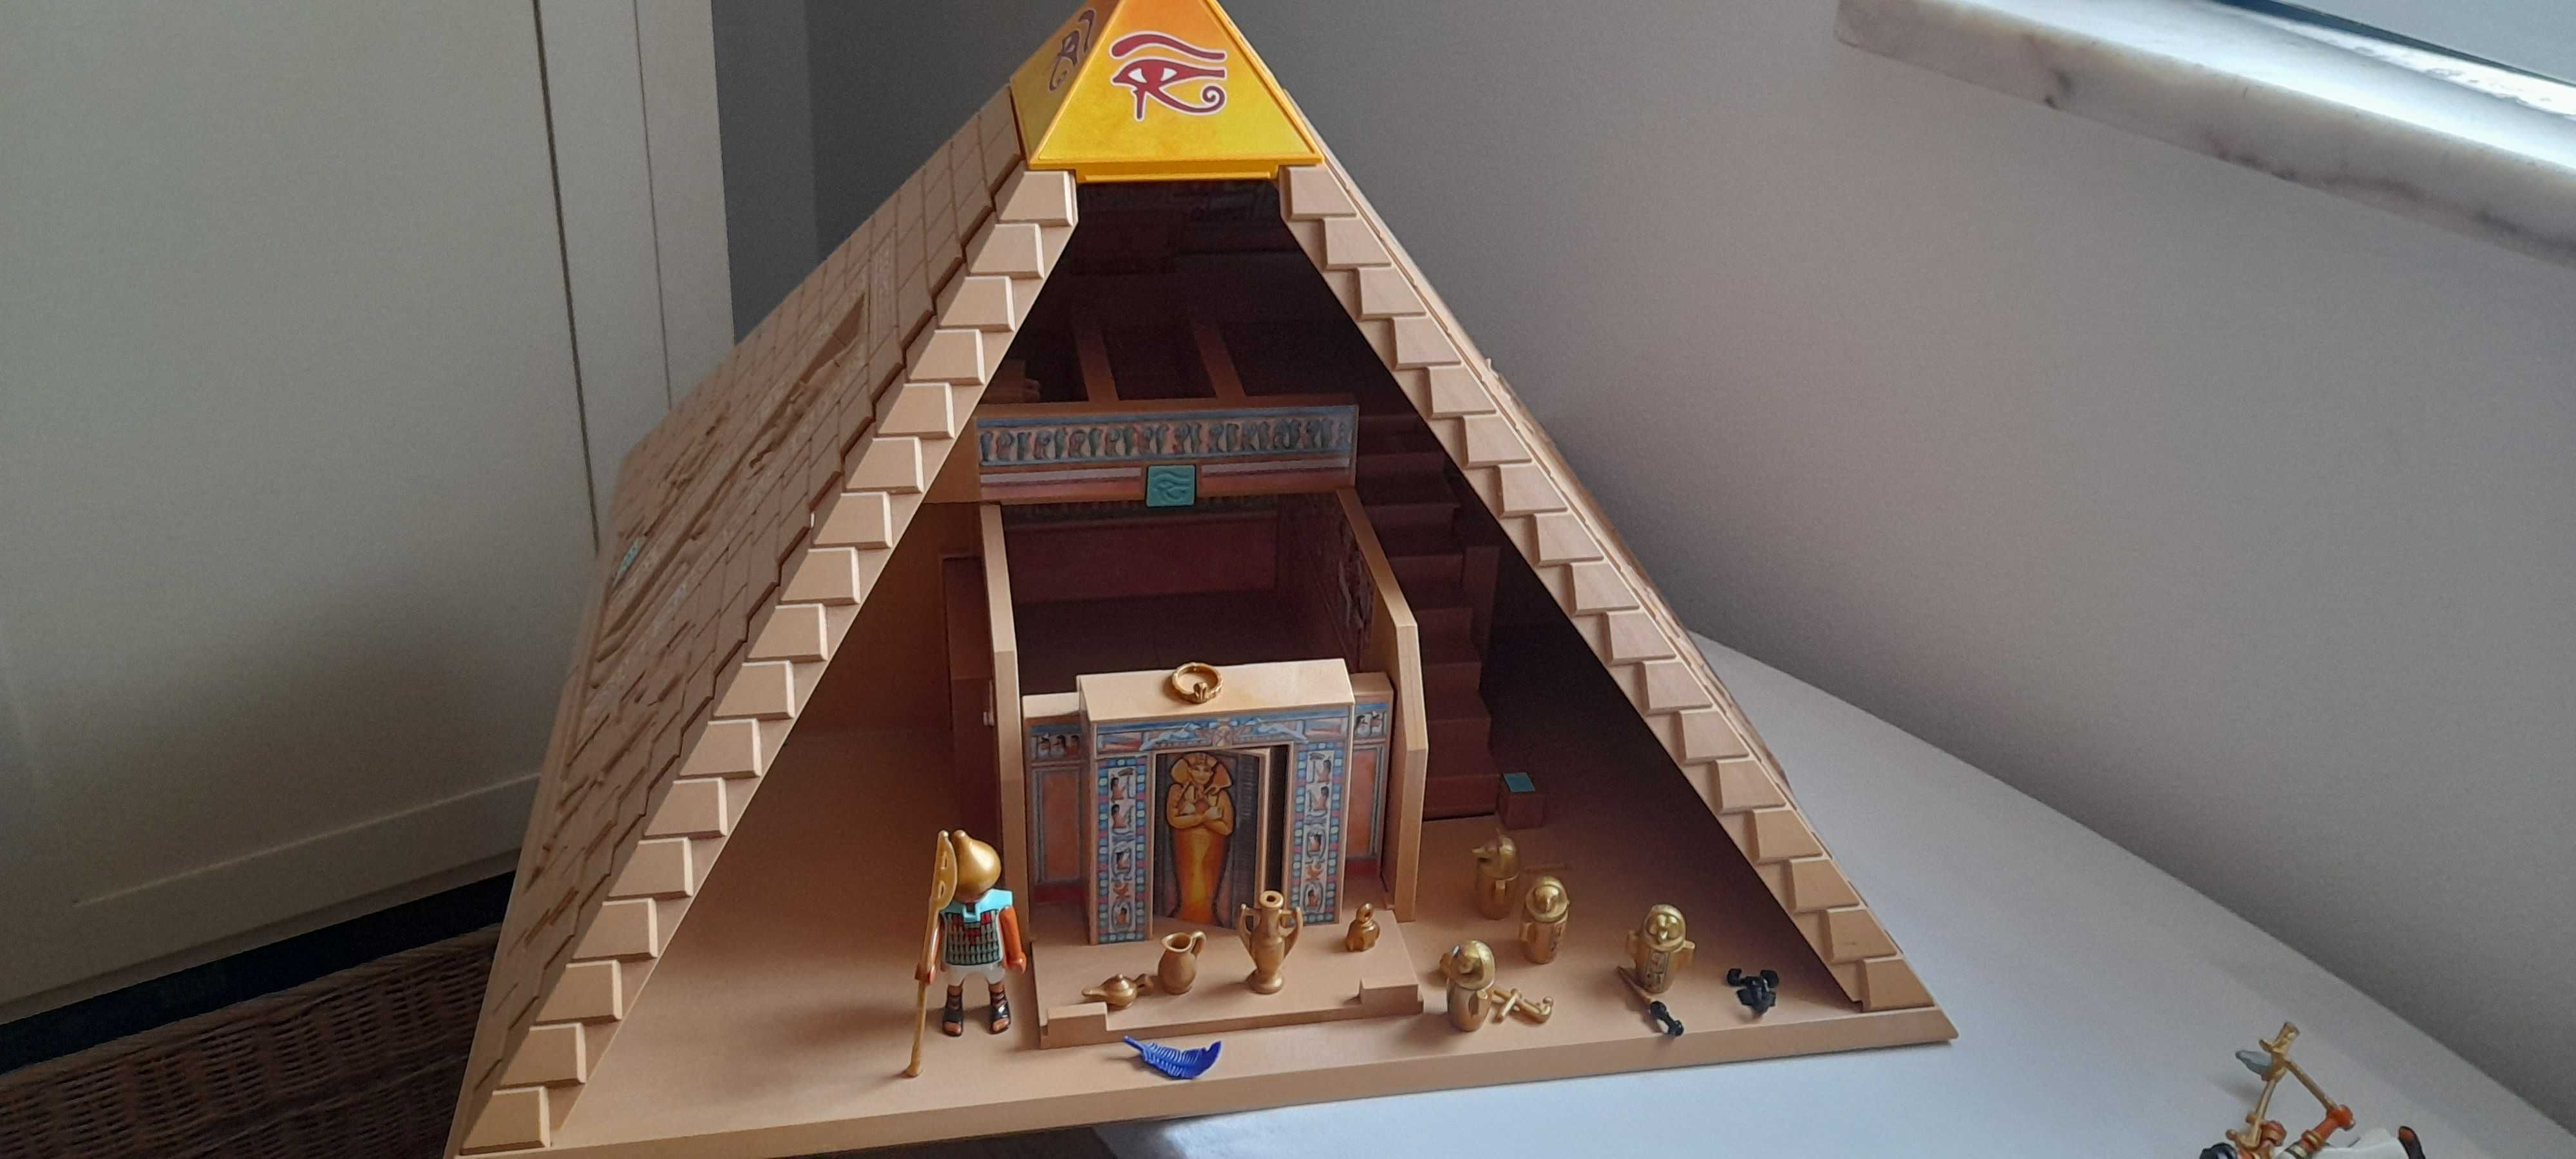 Playmobil Egito 4240 - Pirâmide Do Faraó - Completa